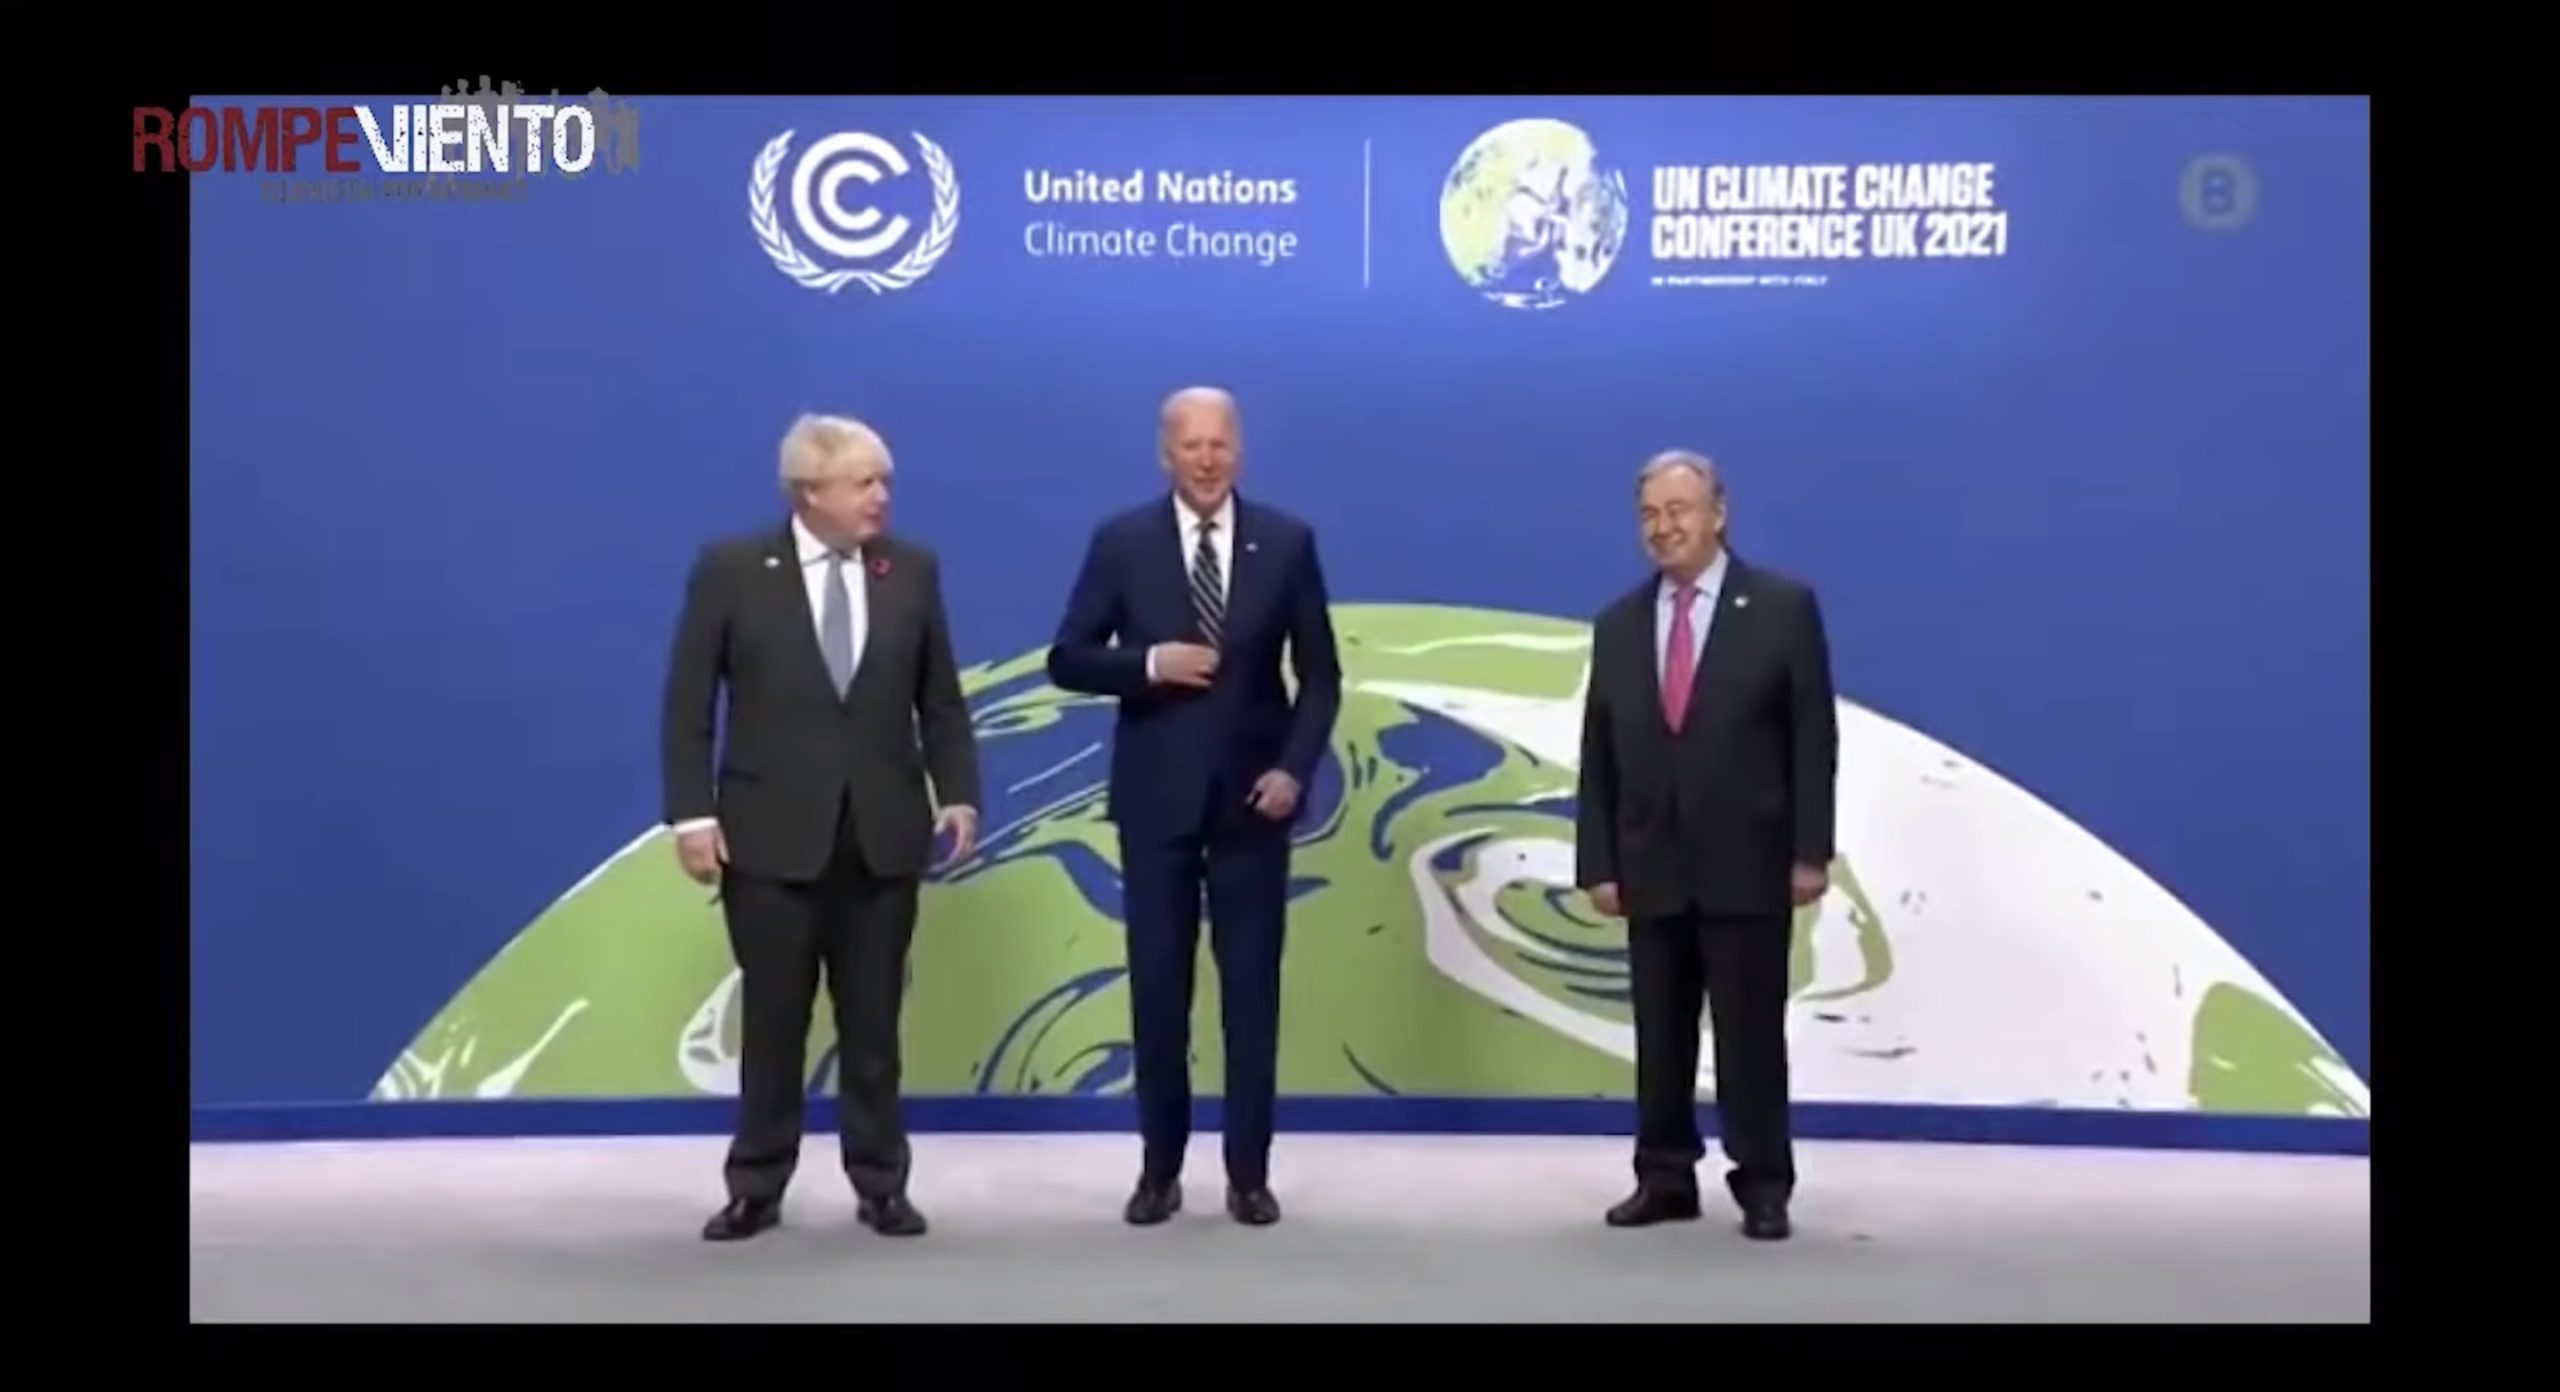 La #COP26, ¿última oportunidad para parar el cambio climático? - Mirada Crítica